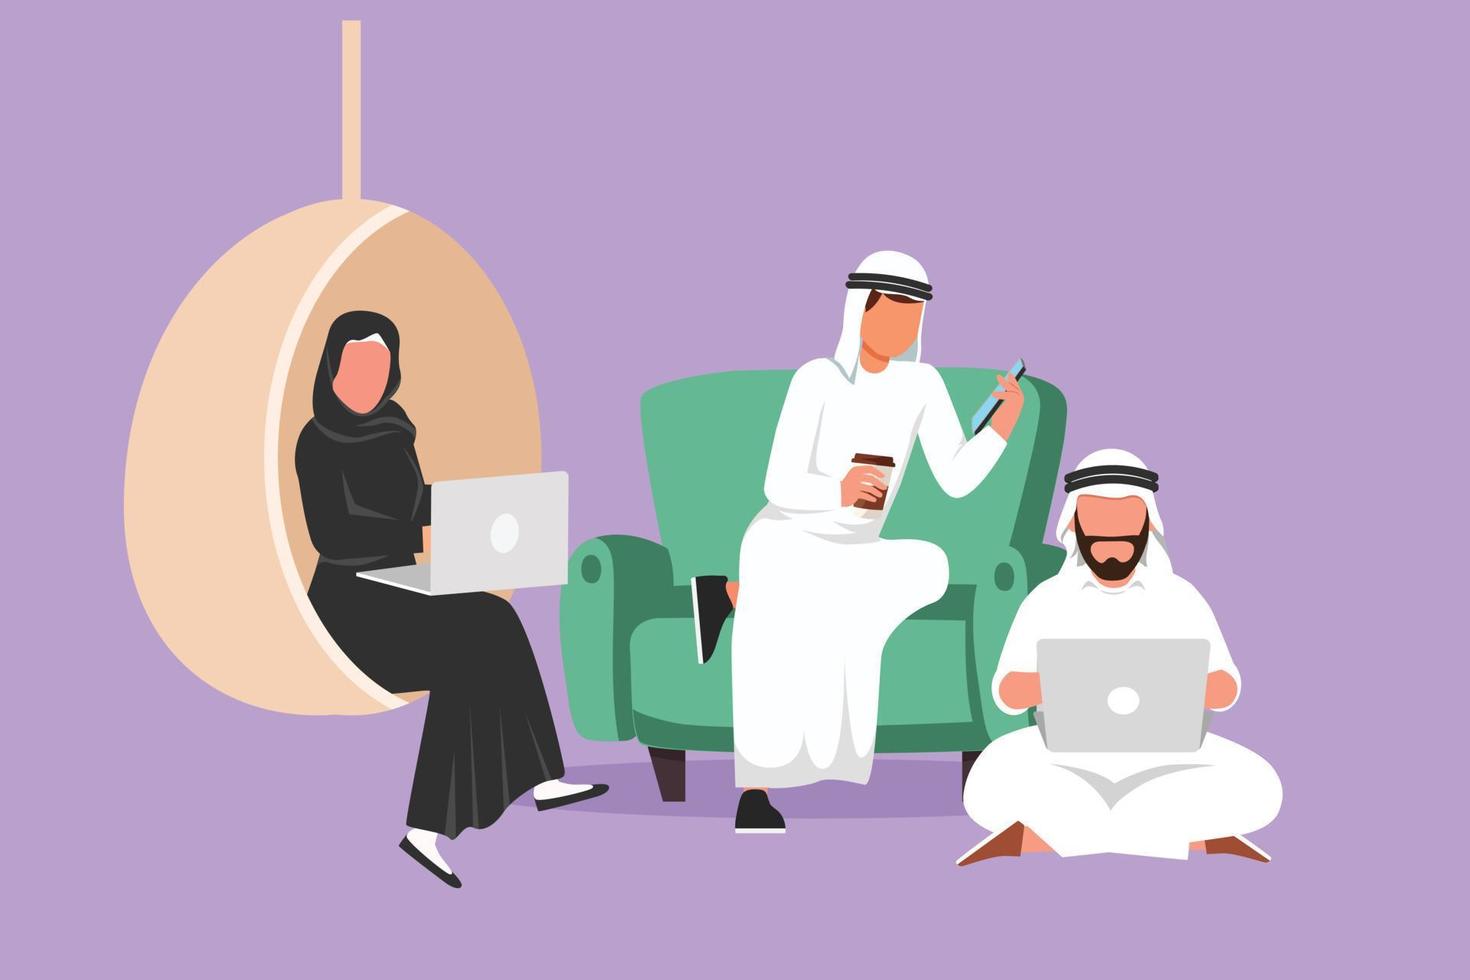 groupe de dessin plat de caractère de personnes arabes avec ordinateur portable à la maison. homme sur un canapé, homme assis sur le sol, femme assise sur une balançoire, tapant ou étudiant ensemble. illustration vectorielle de dessin animé vecteur